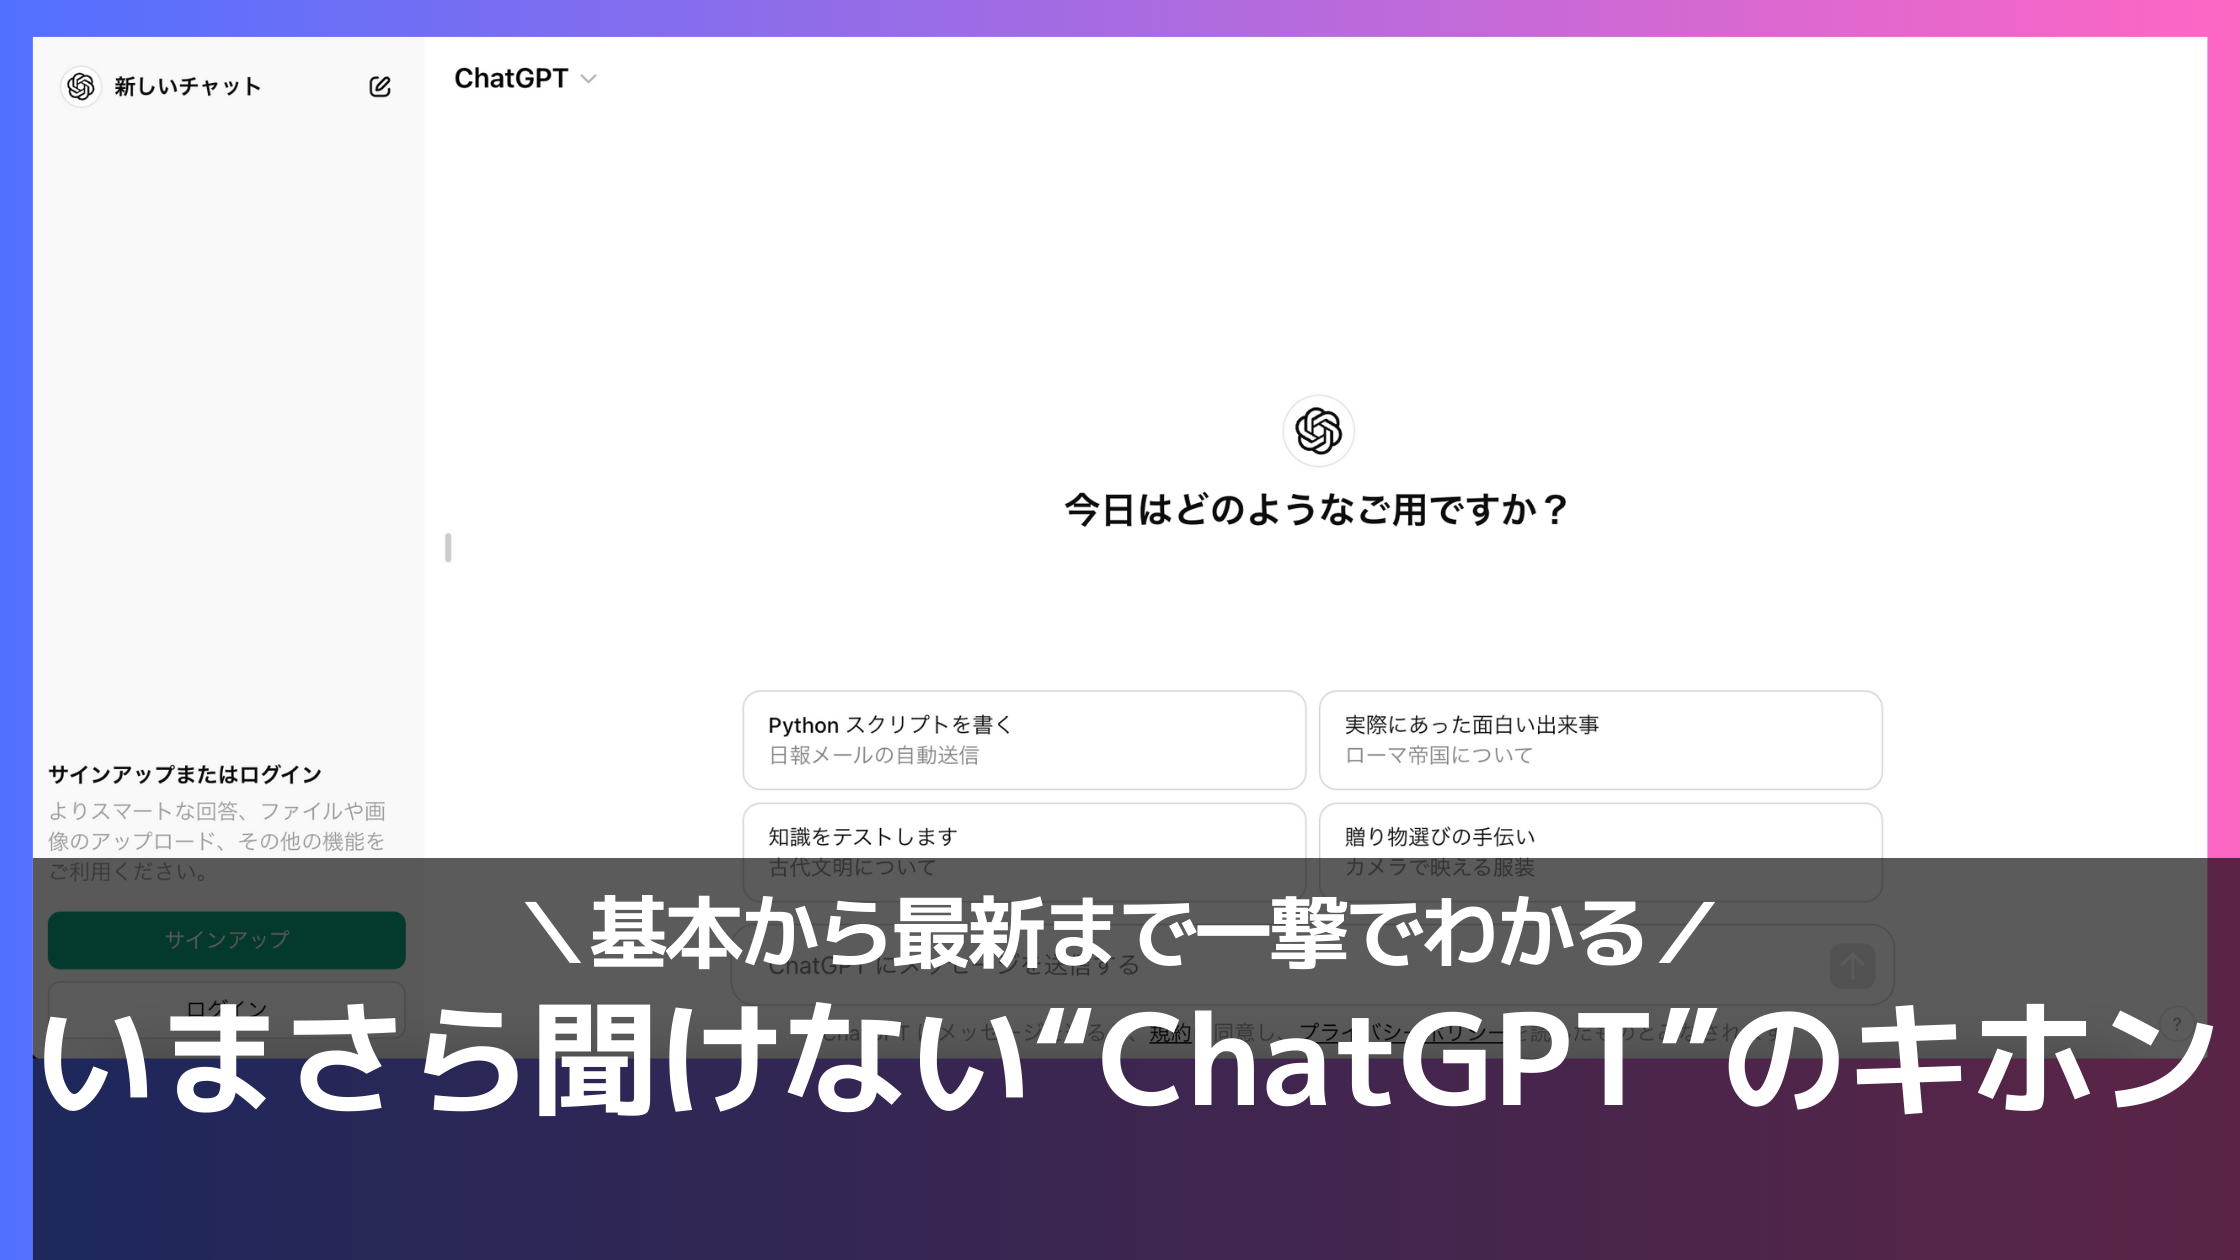 ChatGPT基本ページのサムネイル